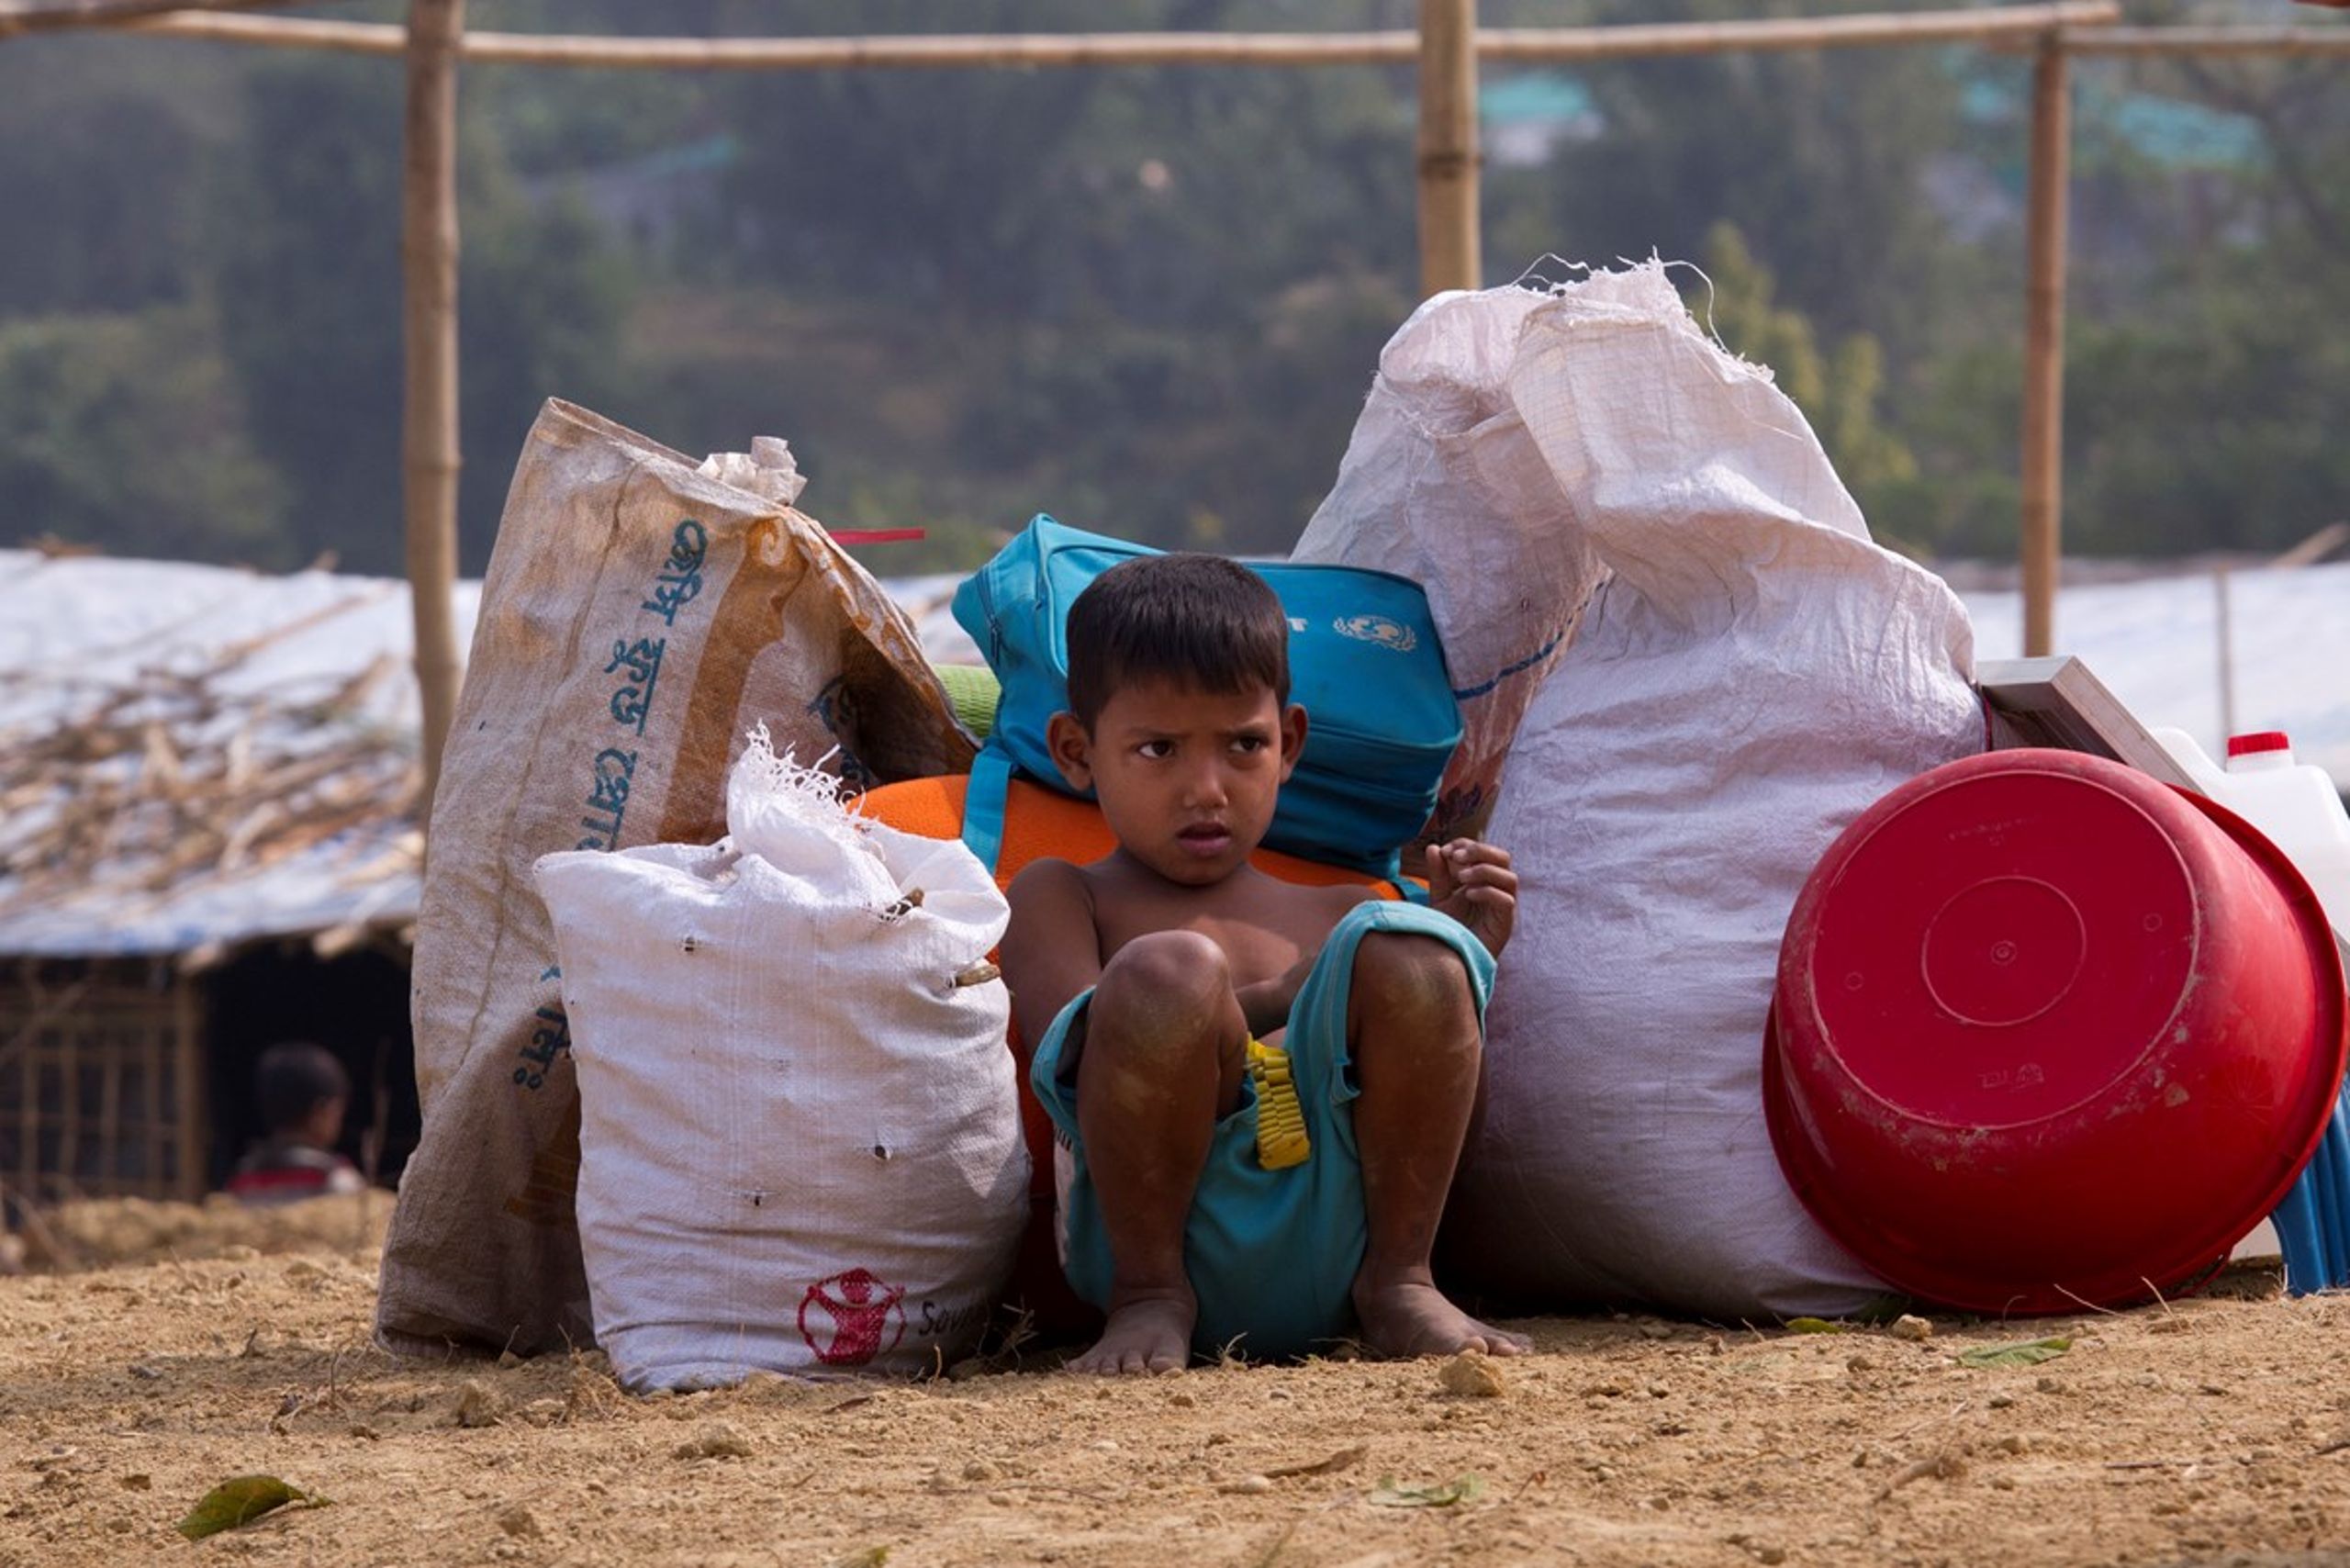 Verdens største flygtningelejr ved Cox's Bazar i Bangladesh huser op mod en milion flygtninge - fordrevne&nbsp;rohingyaer fra Myanmar. Over halvdelen af dem er børn. Sådanne situationer og steder har desværre stor tiltrækningskraft for mennesker med irreelle hensigter og skaber øget risiko for illegale adoptioner.&nbsp;